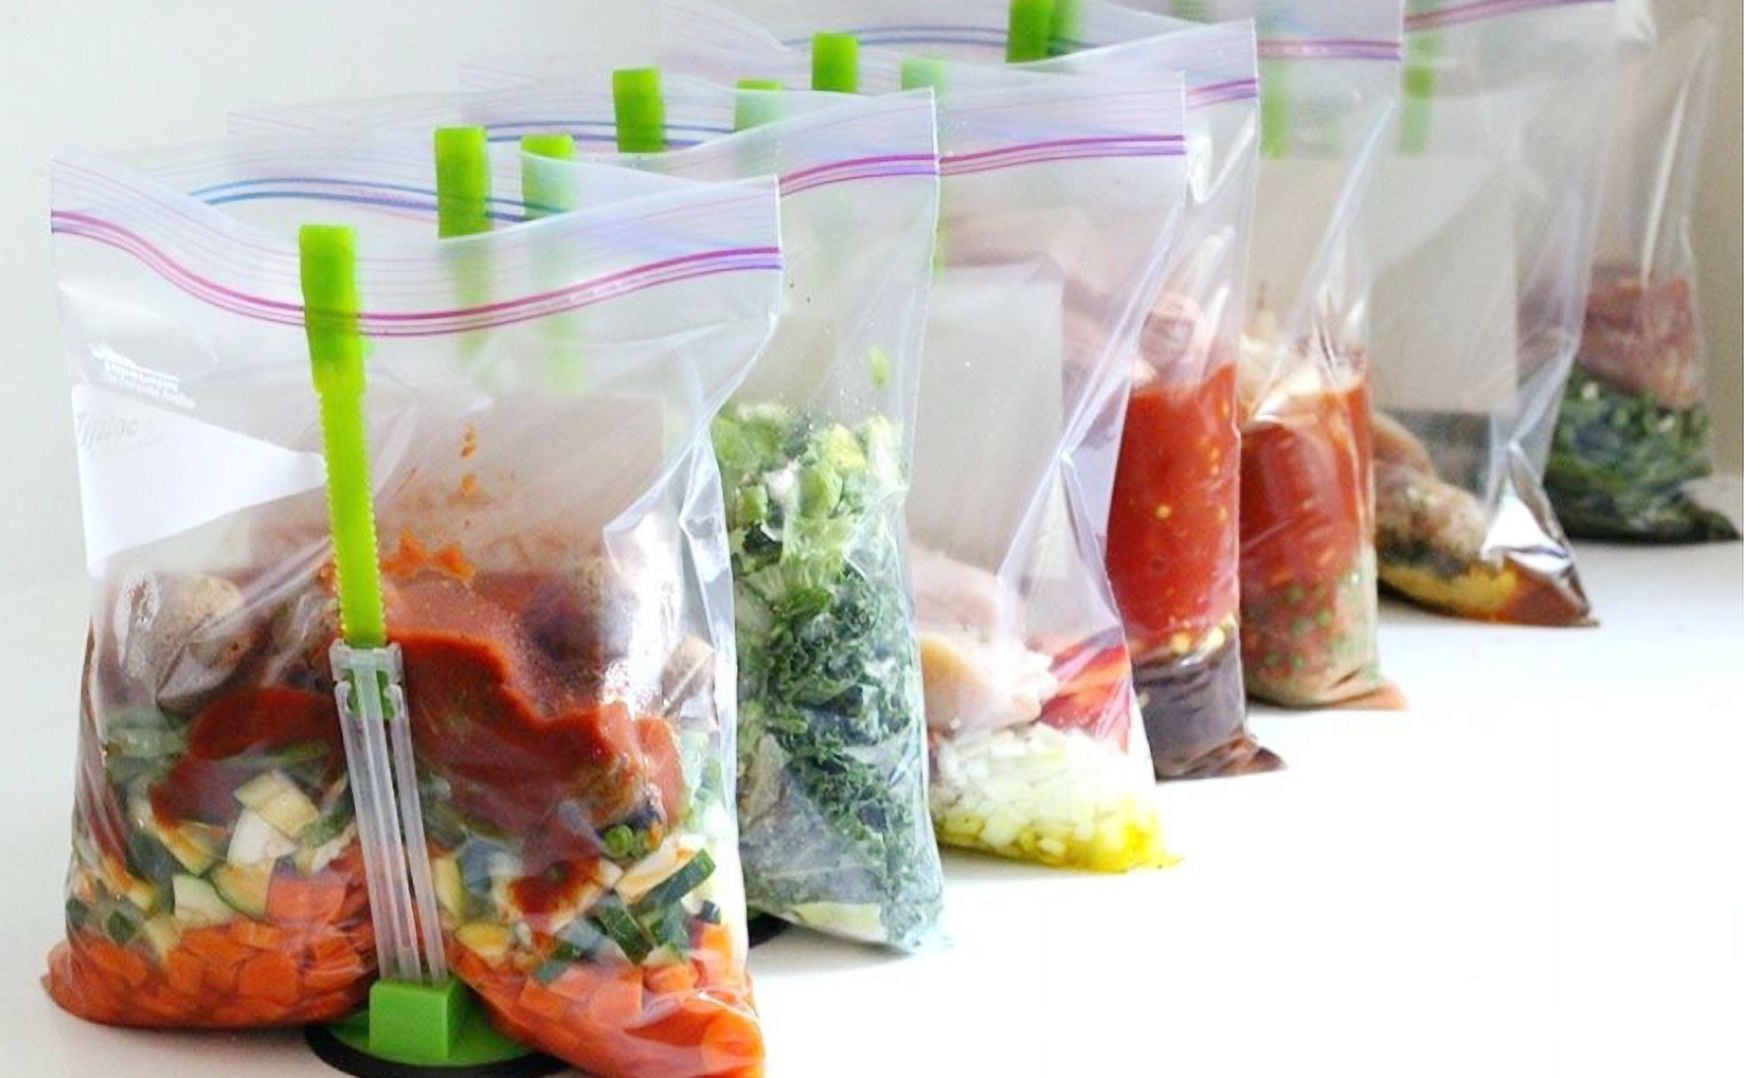 Hands-Free Clip Food Storage Freezer Baggy Holder, Bag Holder for